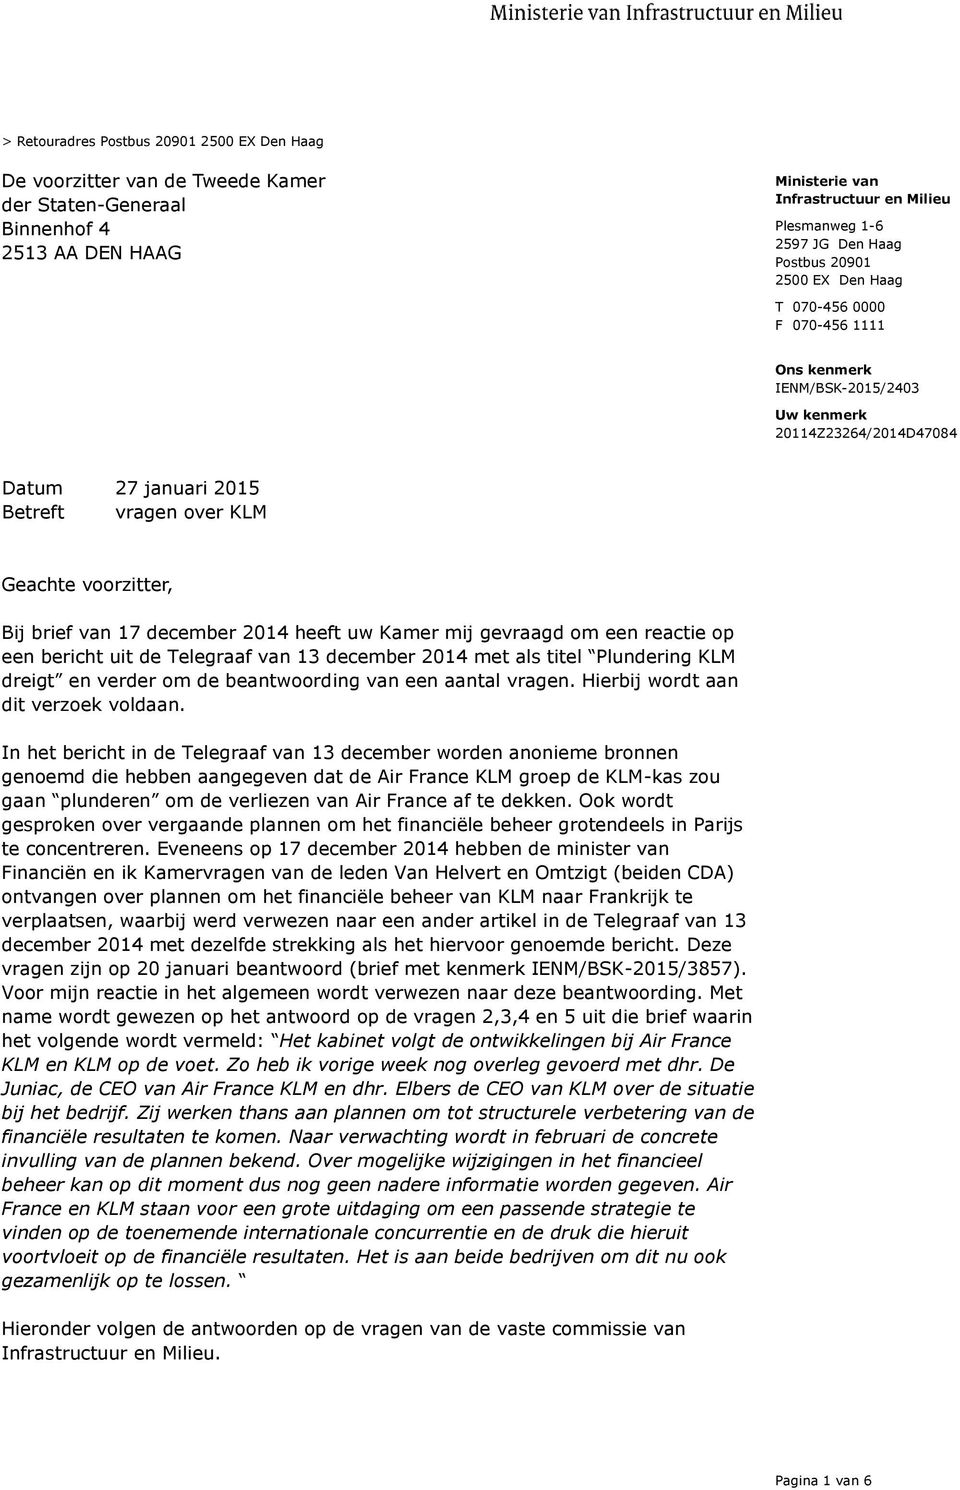 reactie op een bericht uit de Telegraaf van 13 december 2014 met als titel Plundering KLM dreigt en verder om de beantwoording van een aantal vragen. Hierbij wordt aan dit verzoek voldaan.